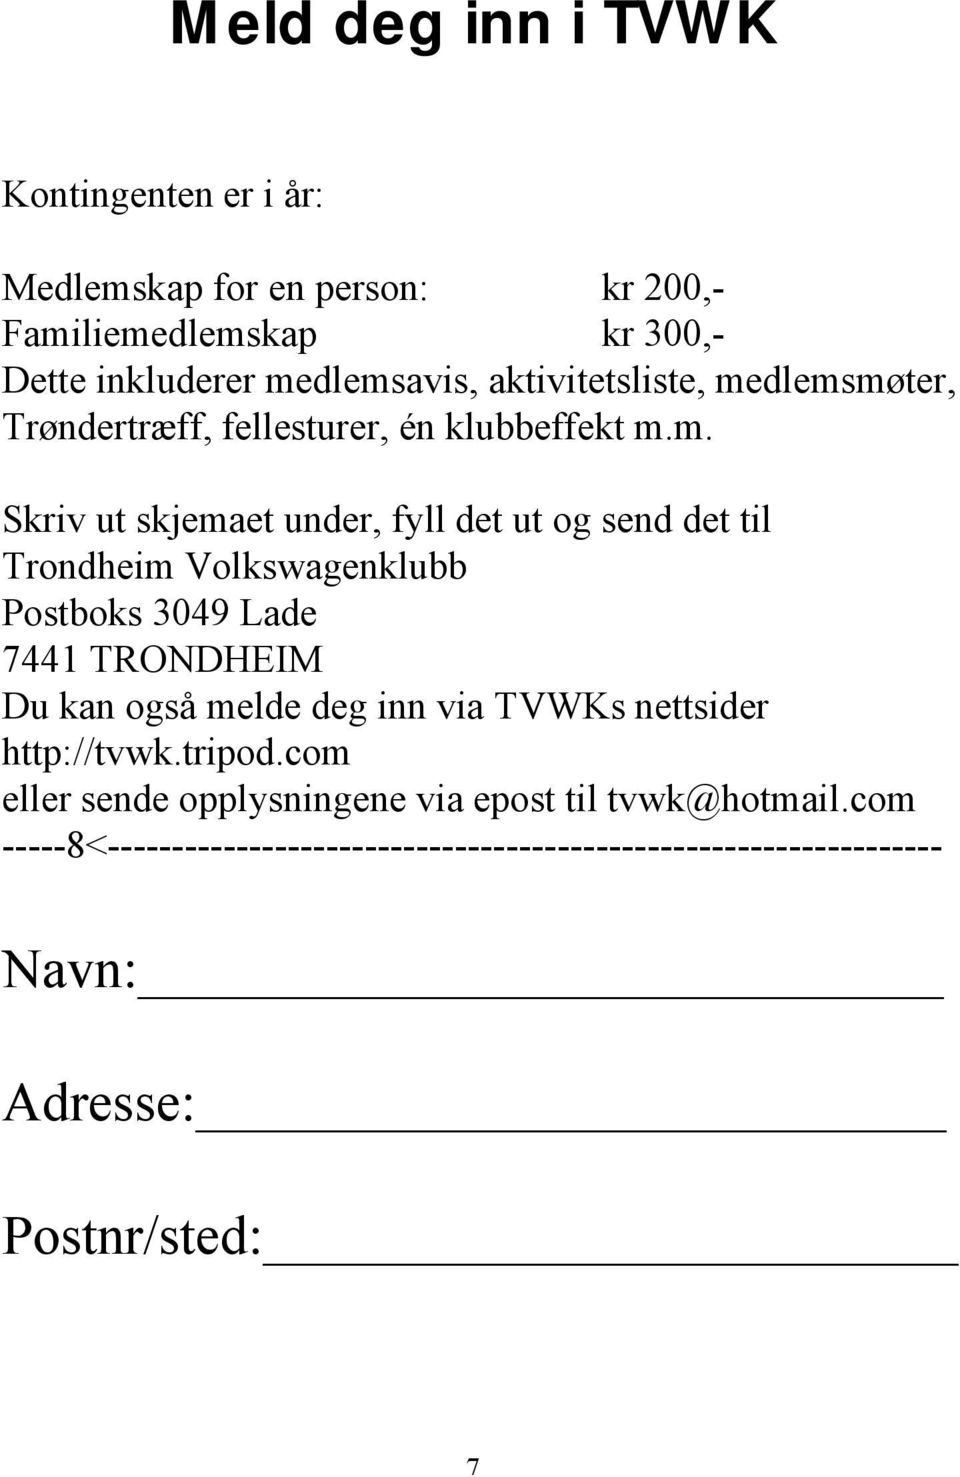 dlemsmøter, Trøndertræff, fellesturer, én klubbeffekt m.m. Skriv ut skjemaet under, fyll det ut og send det til Trondheim Volkswagenklubb